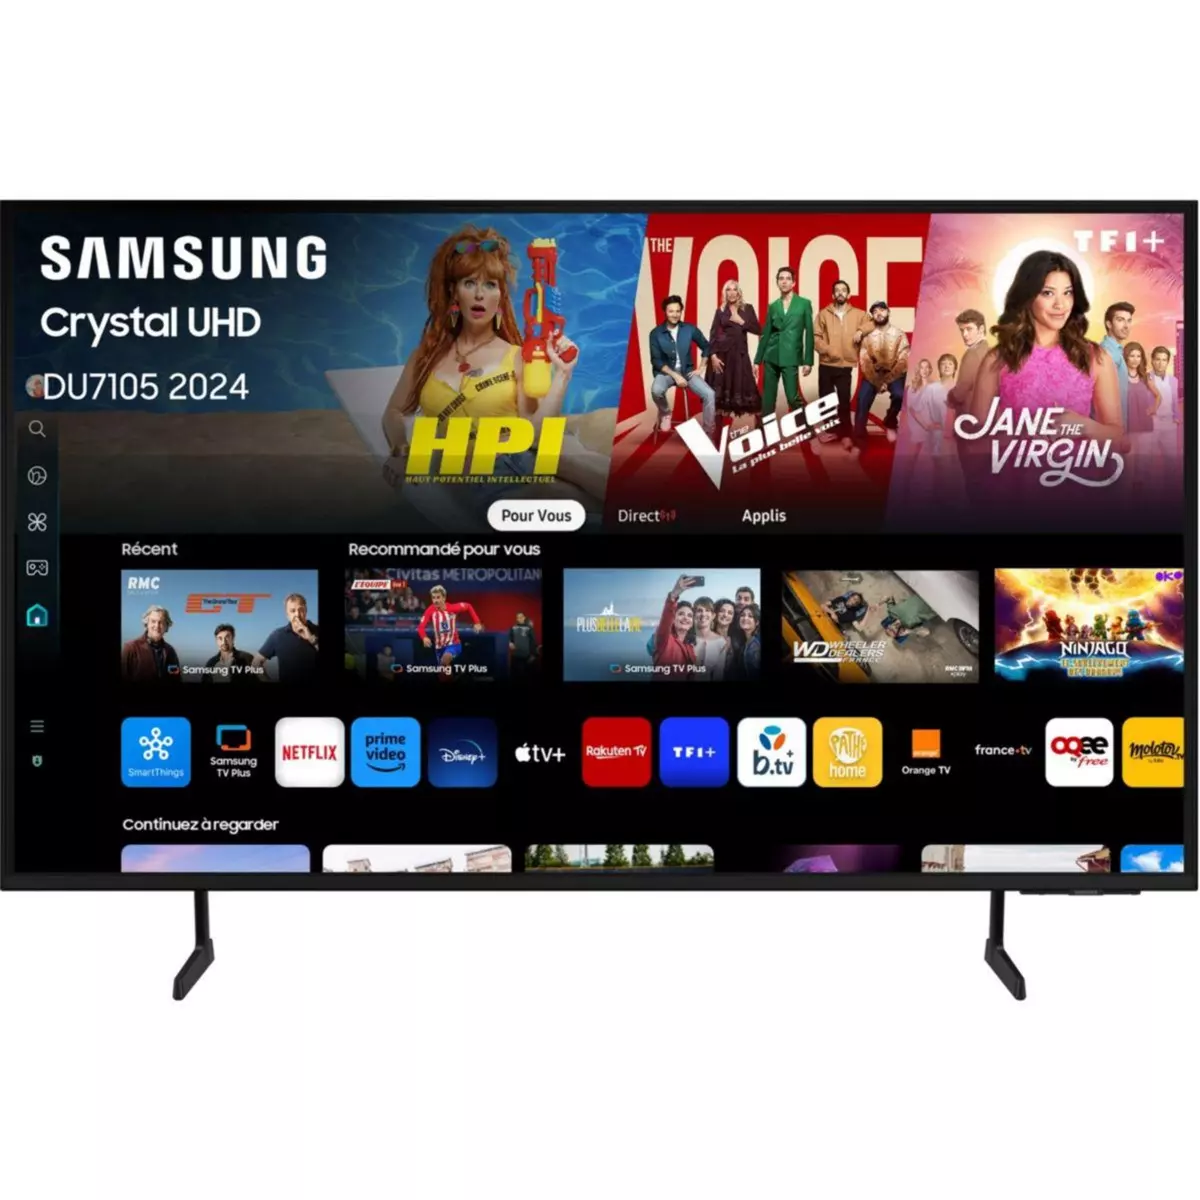 Samsung TV LED TU55DU7105 2024